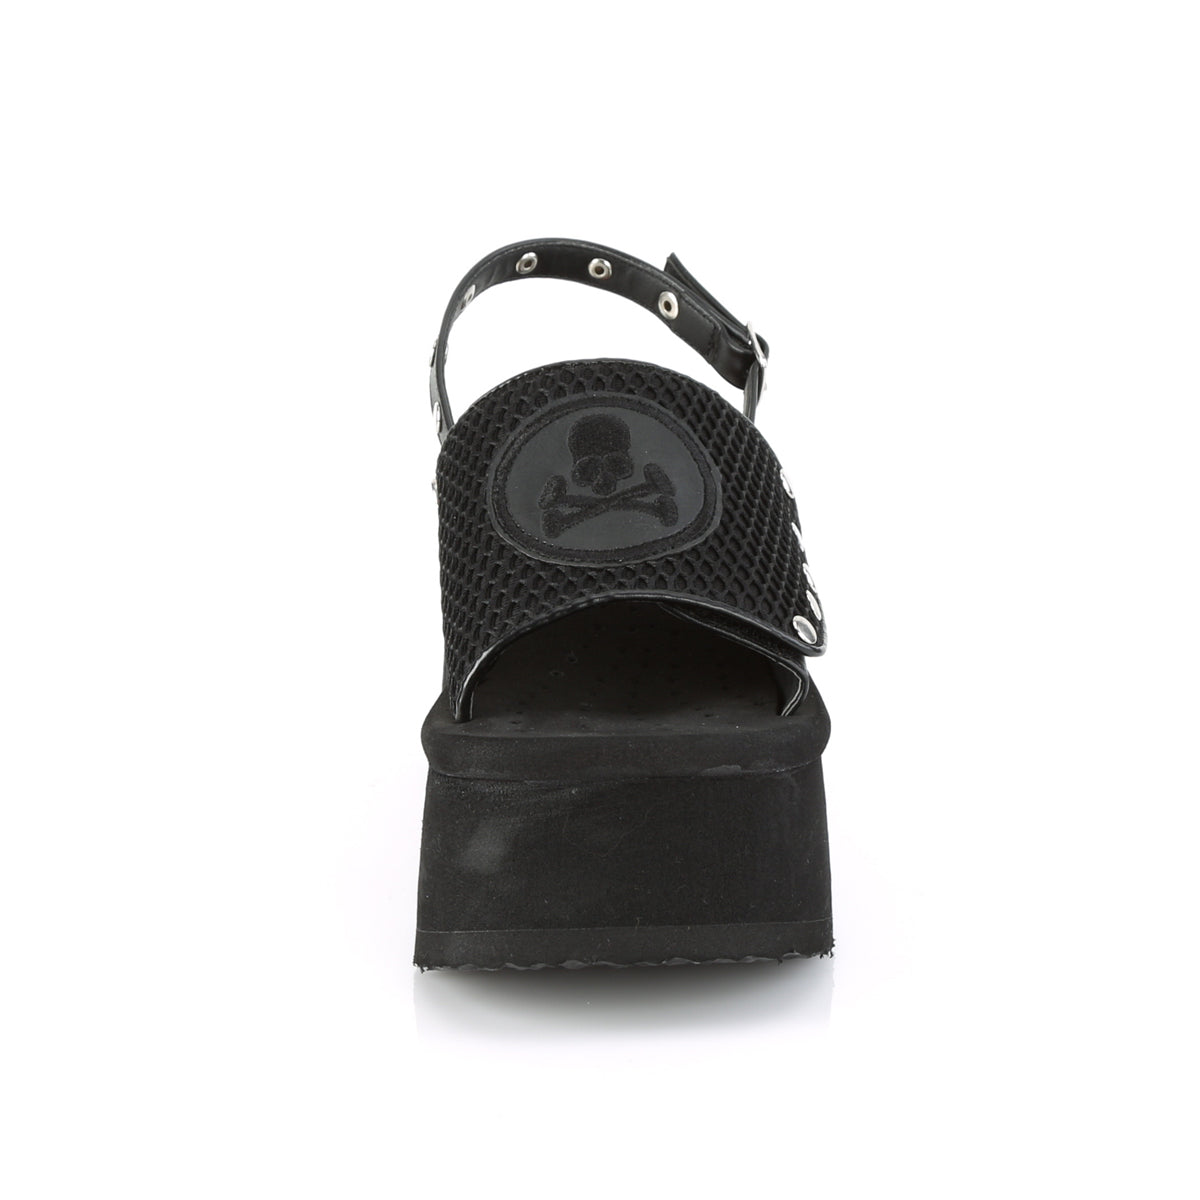 DemoniaCult Womens Sandals FUNN-32 Blk Fishnet-Vegan Leather